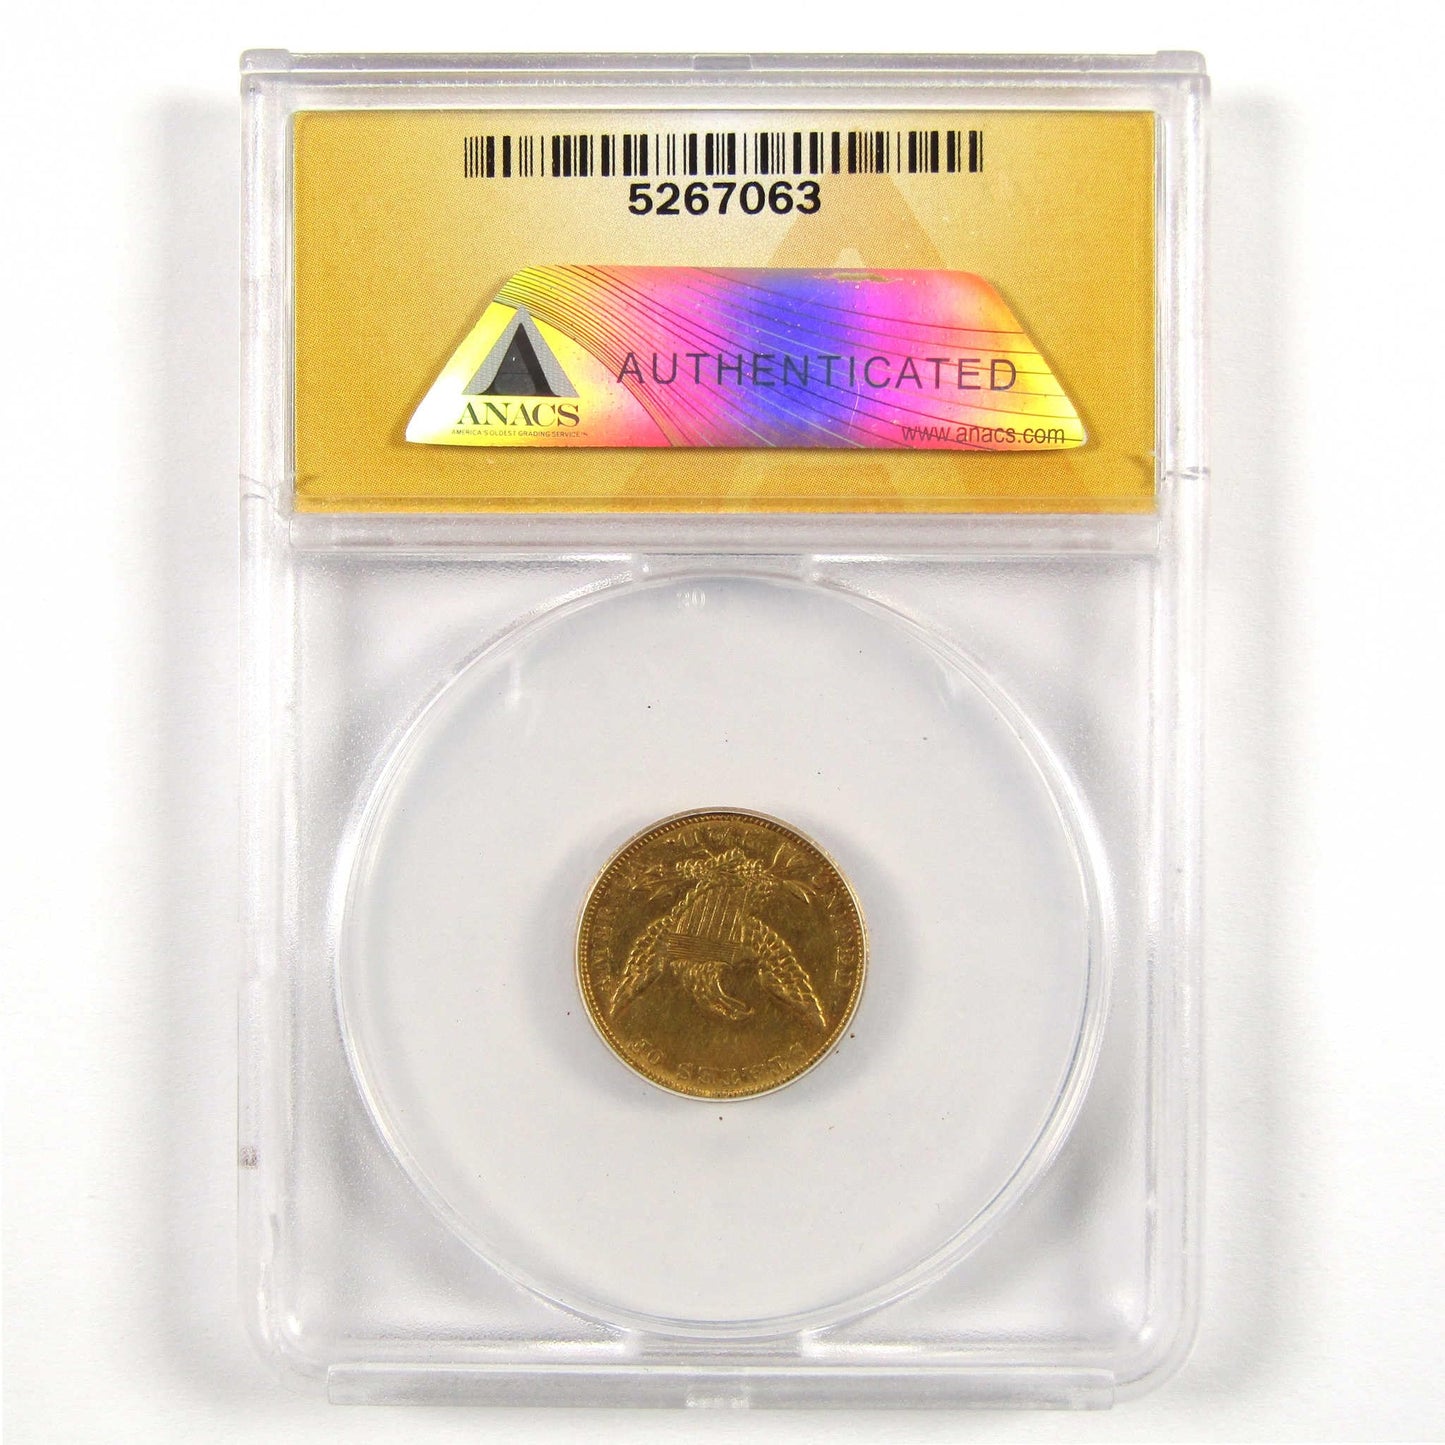 1836 Classic Head Eagle AU 50 Details ANACS Gold $2.50 SKU:CPC5977